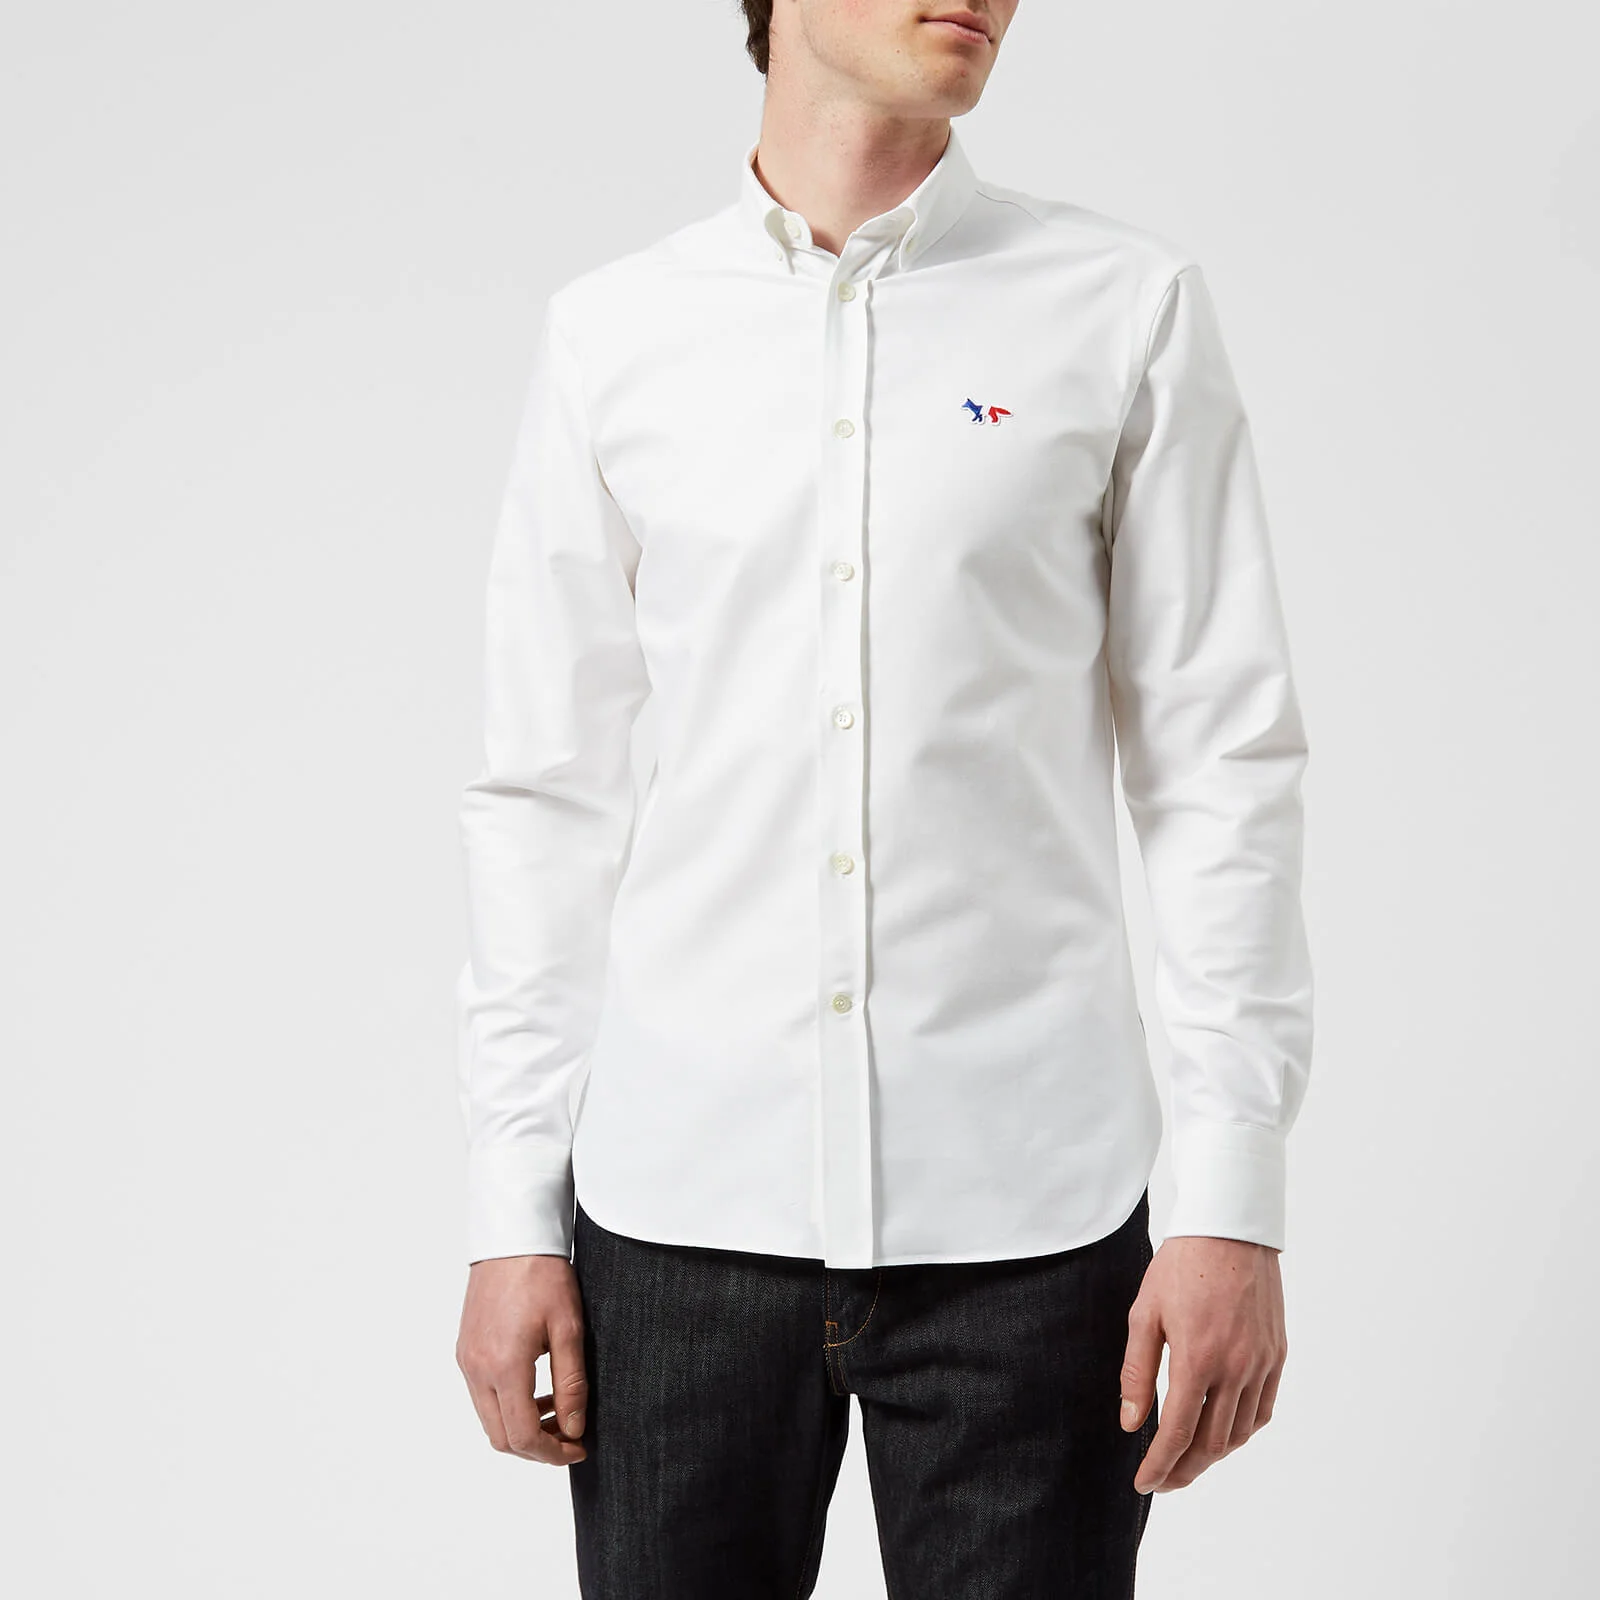 Maison Kitsuné Men's Tricolor Fox Patch Oxford Shirt - White Image 1